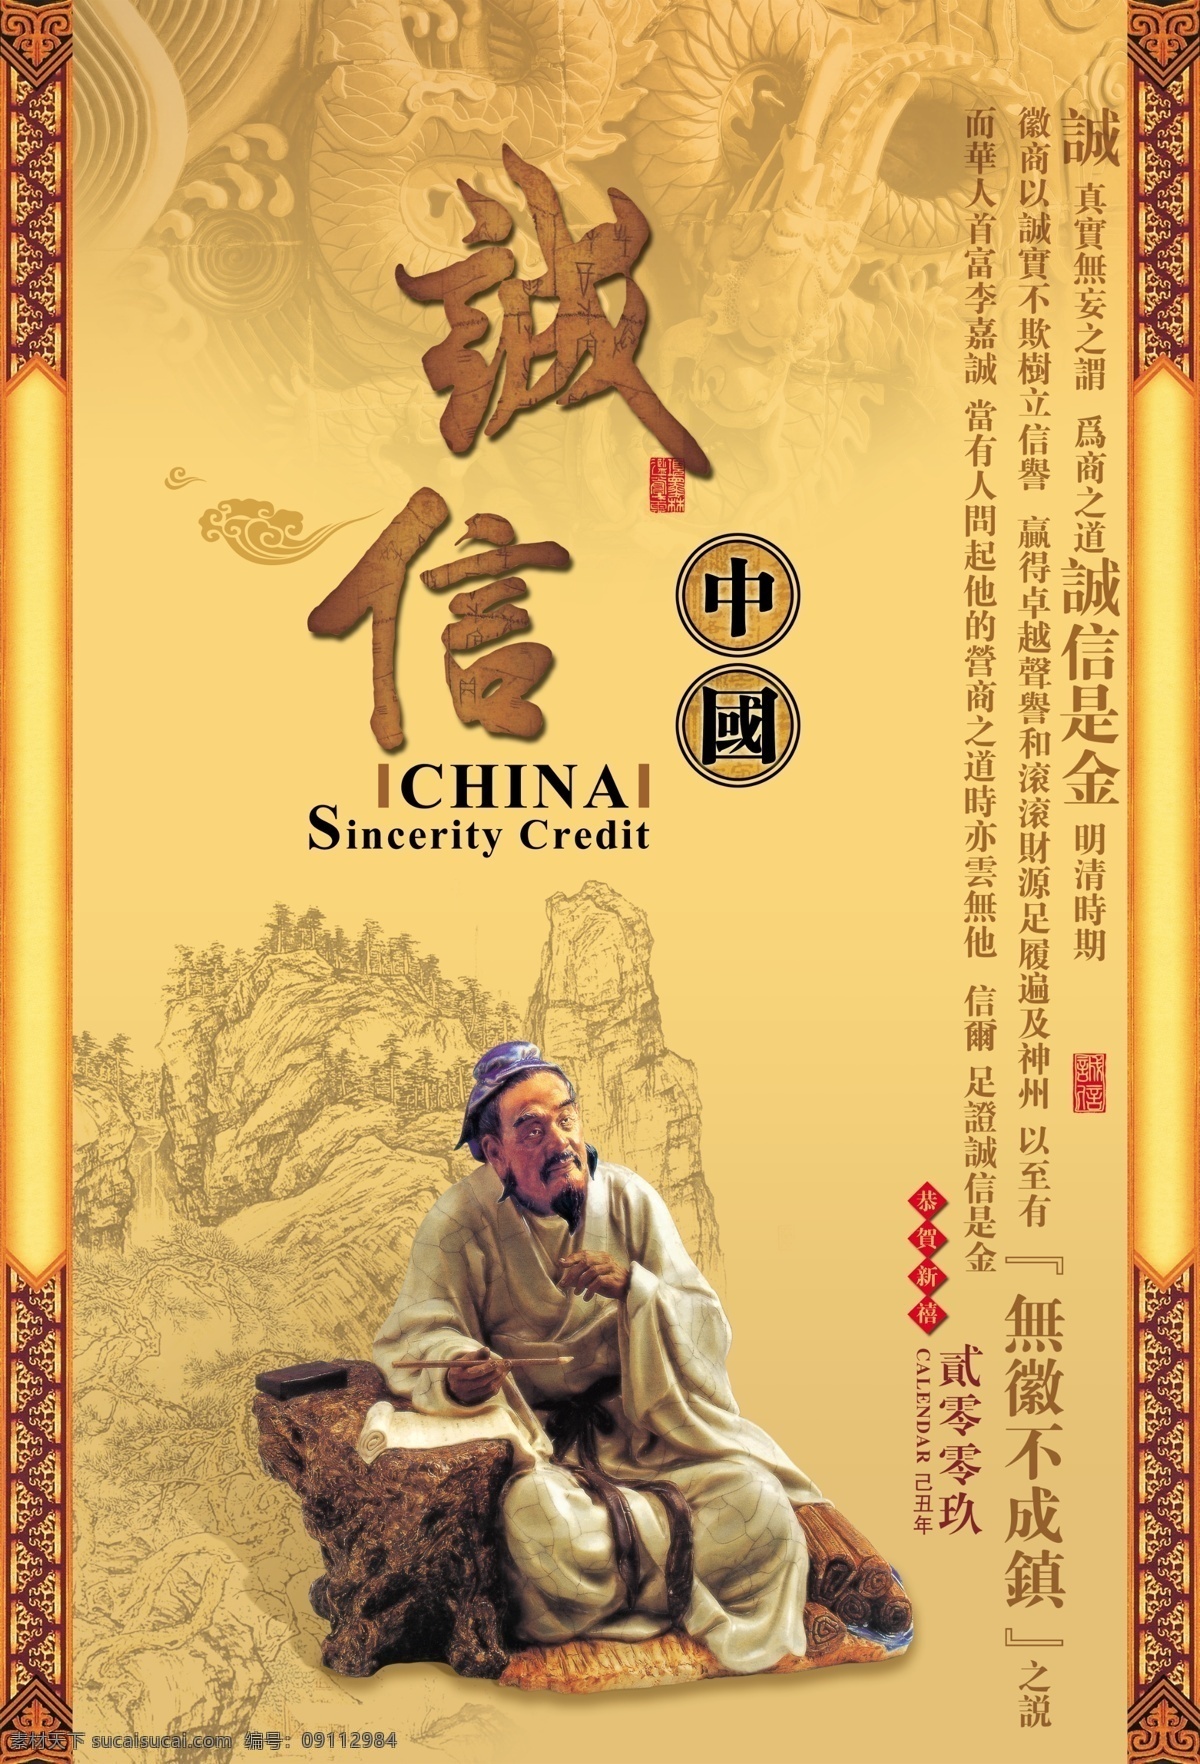 古典 包装设计 中国 传统文化 海报 传统文化设计